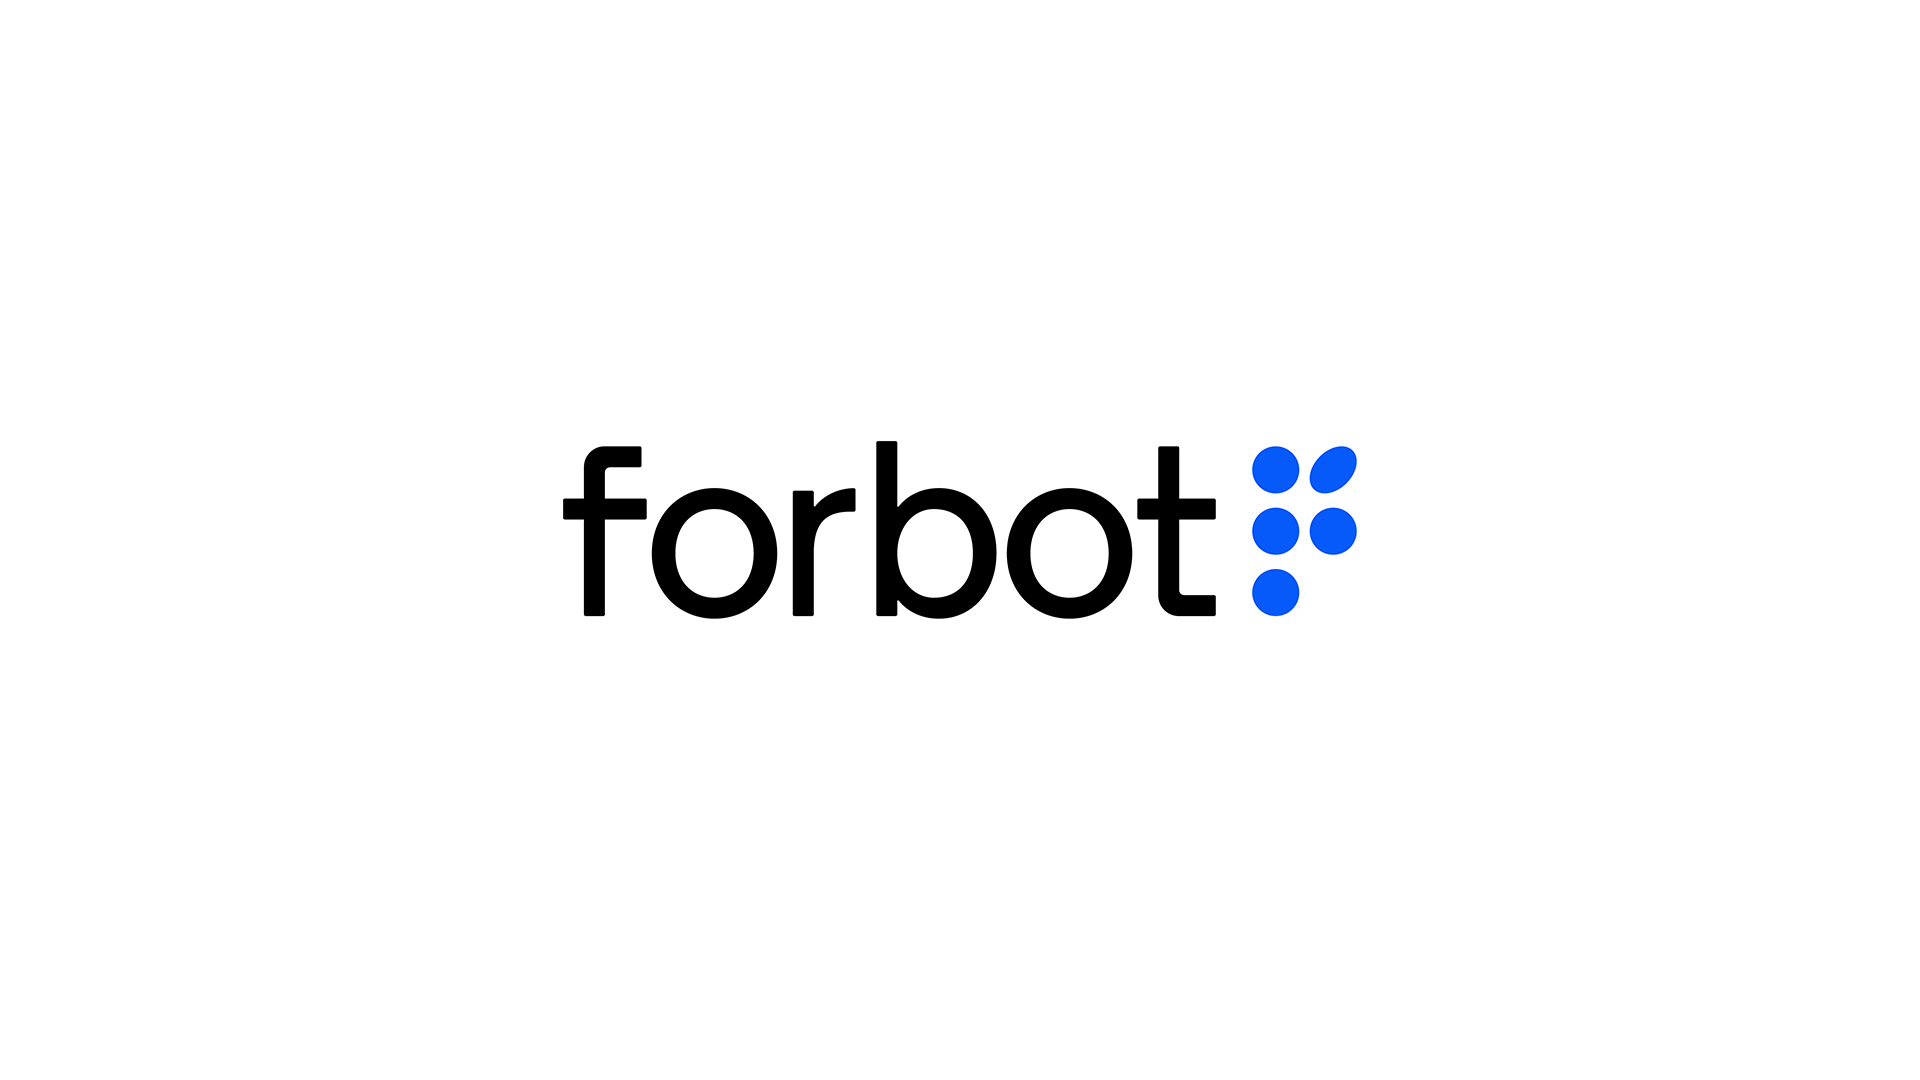 Forbot Brand Identity